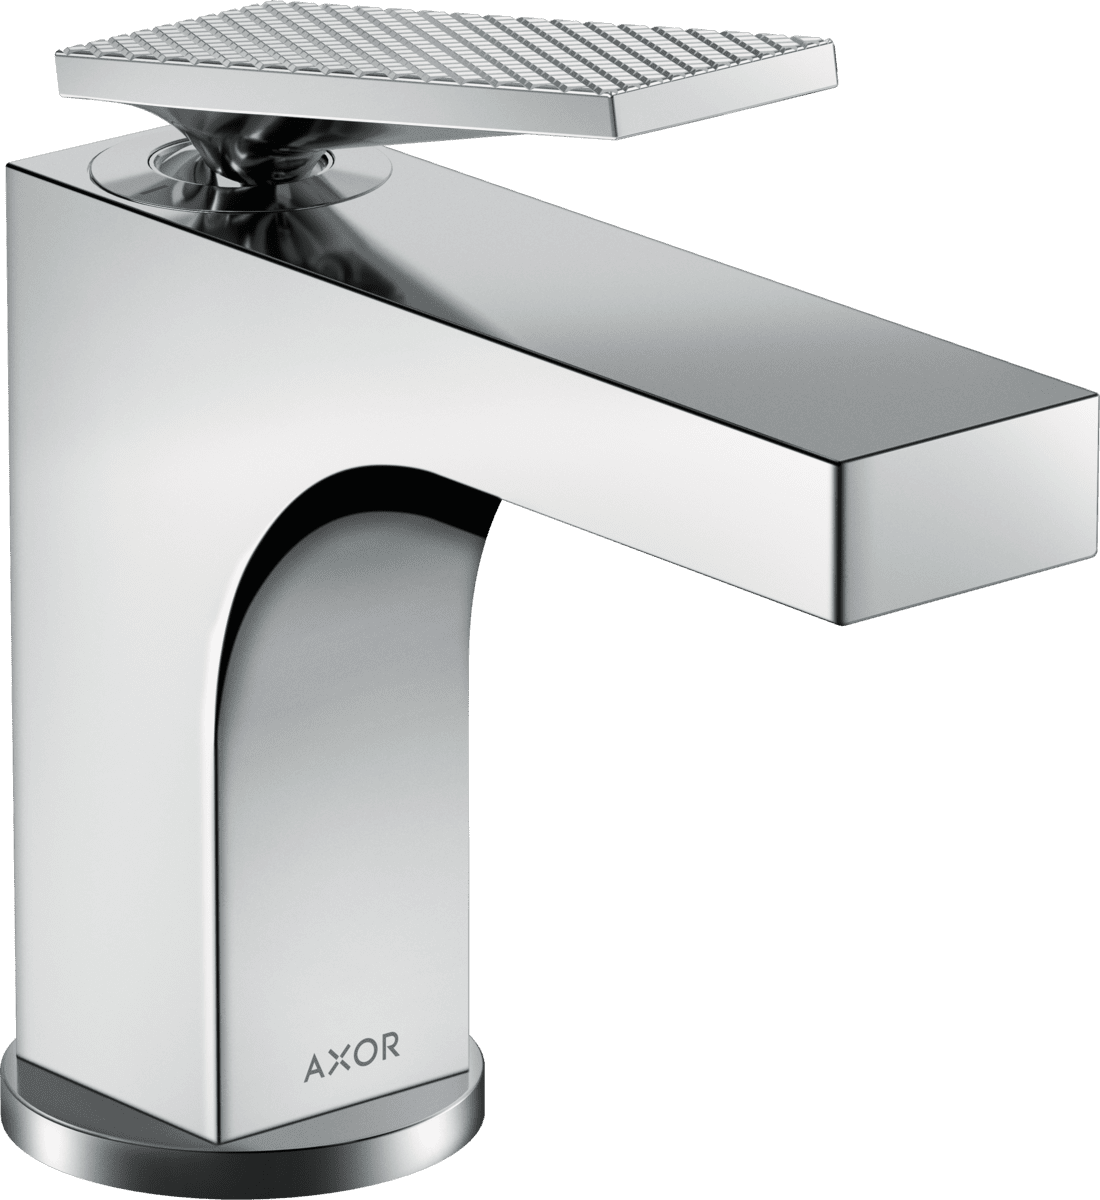 Bild von HANSGROHE AXOR Citterio Einhebel-Waschtischmischer 90 mit Hebelgriff für Handwaschbecken mit Zugstangen-Ablaufgarnitur - Rautenschliff #39001000 - Chrom